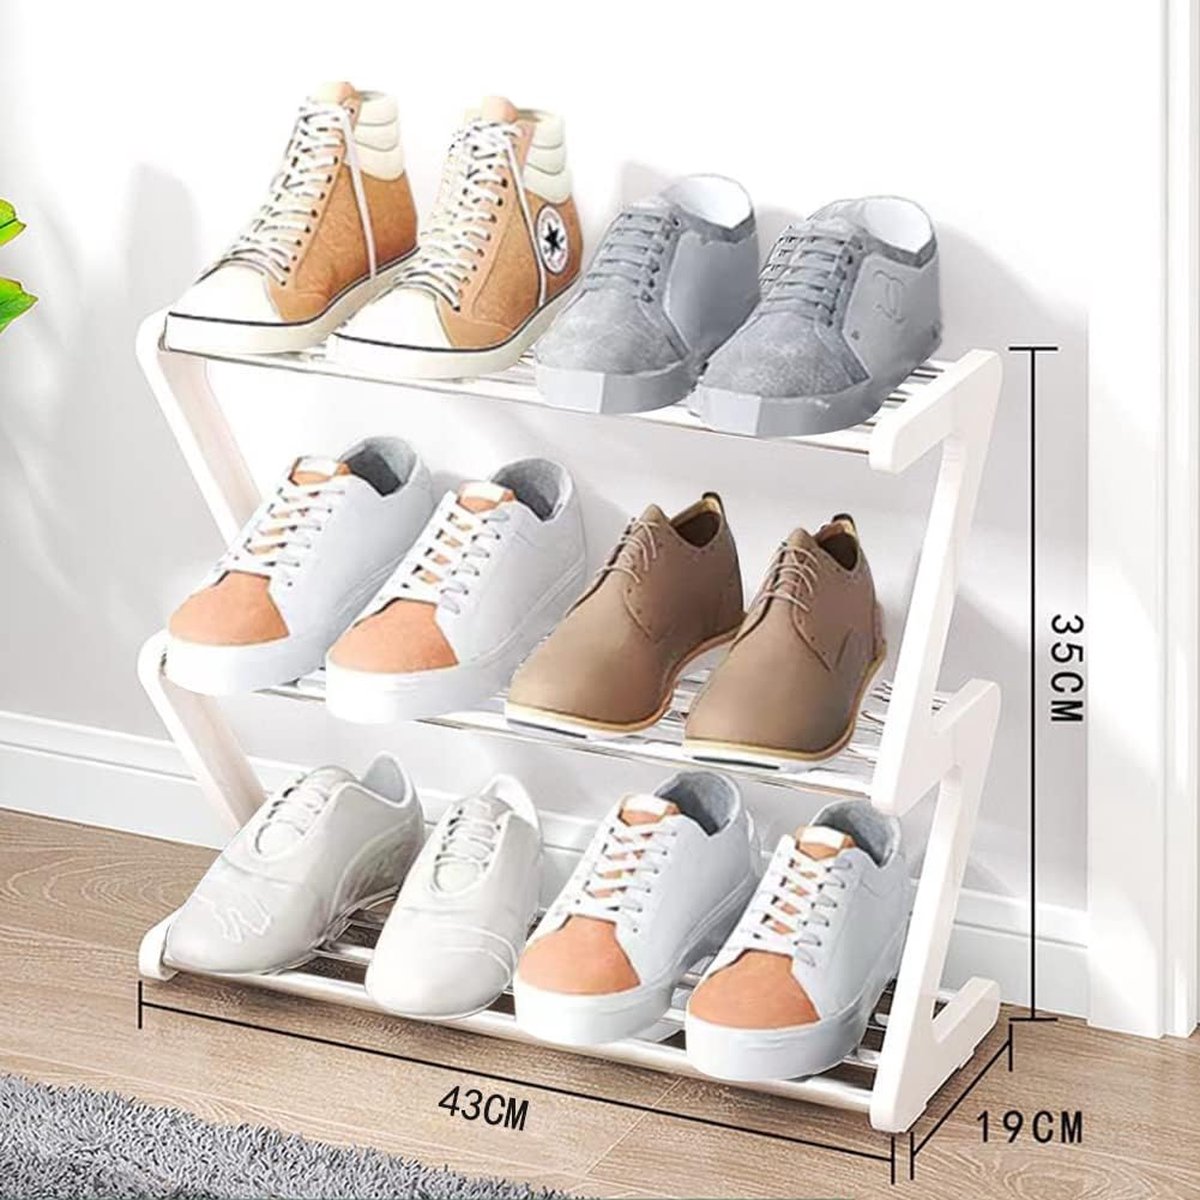 Petite étagère à chaussures, étagère à chaussures empilable 3 couches,  rangement pour chaussures, rangement léger pour